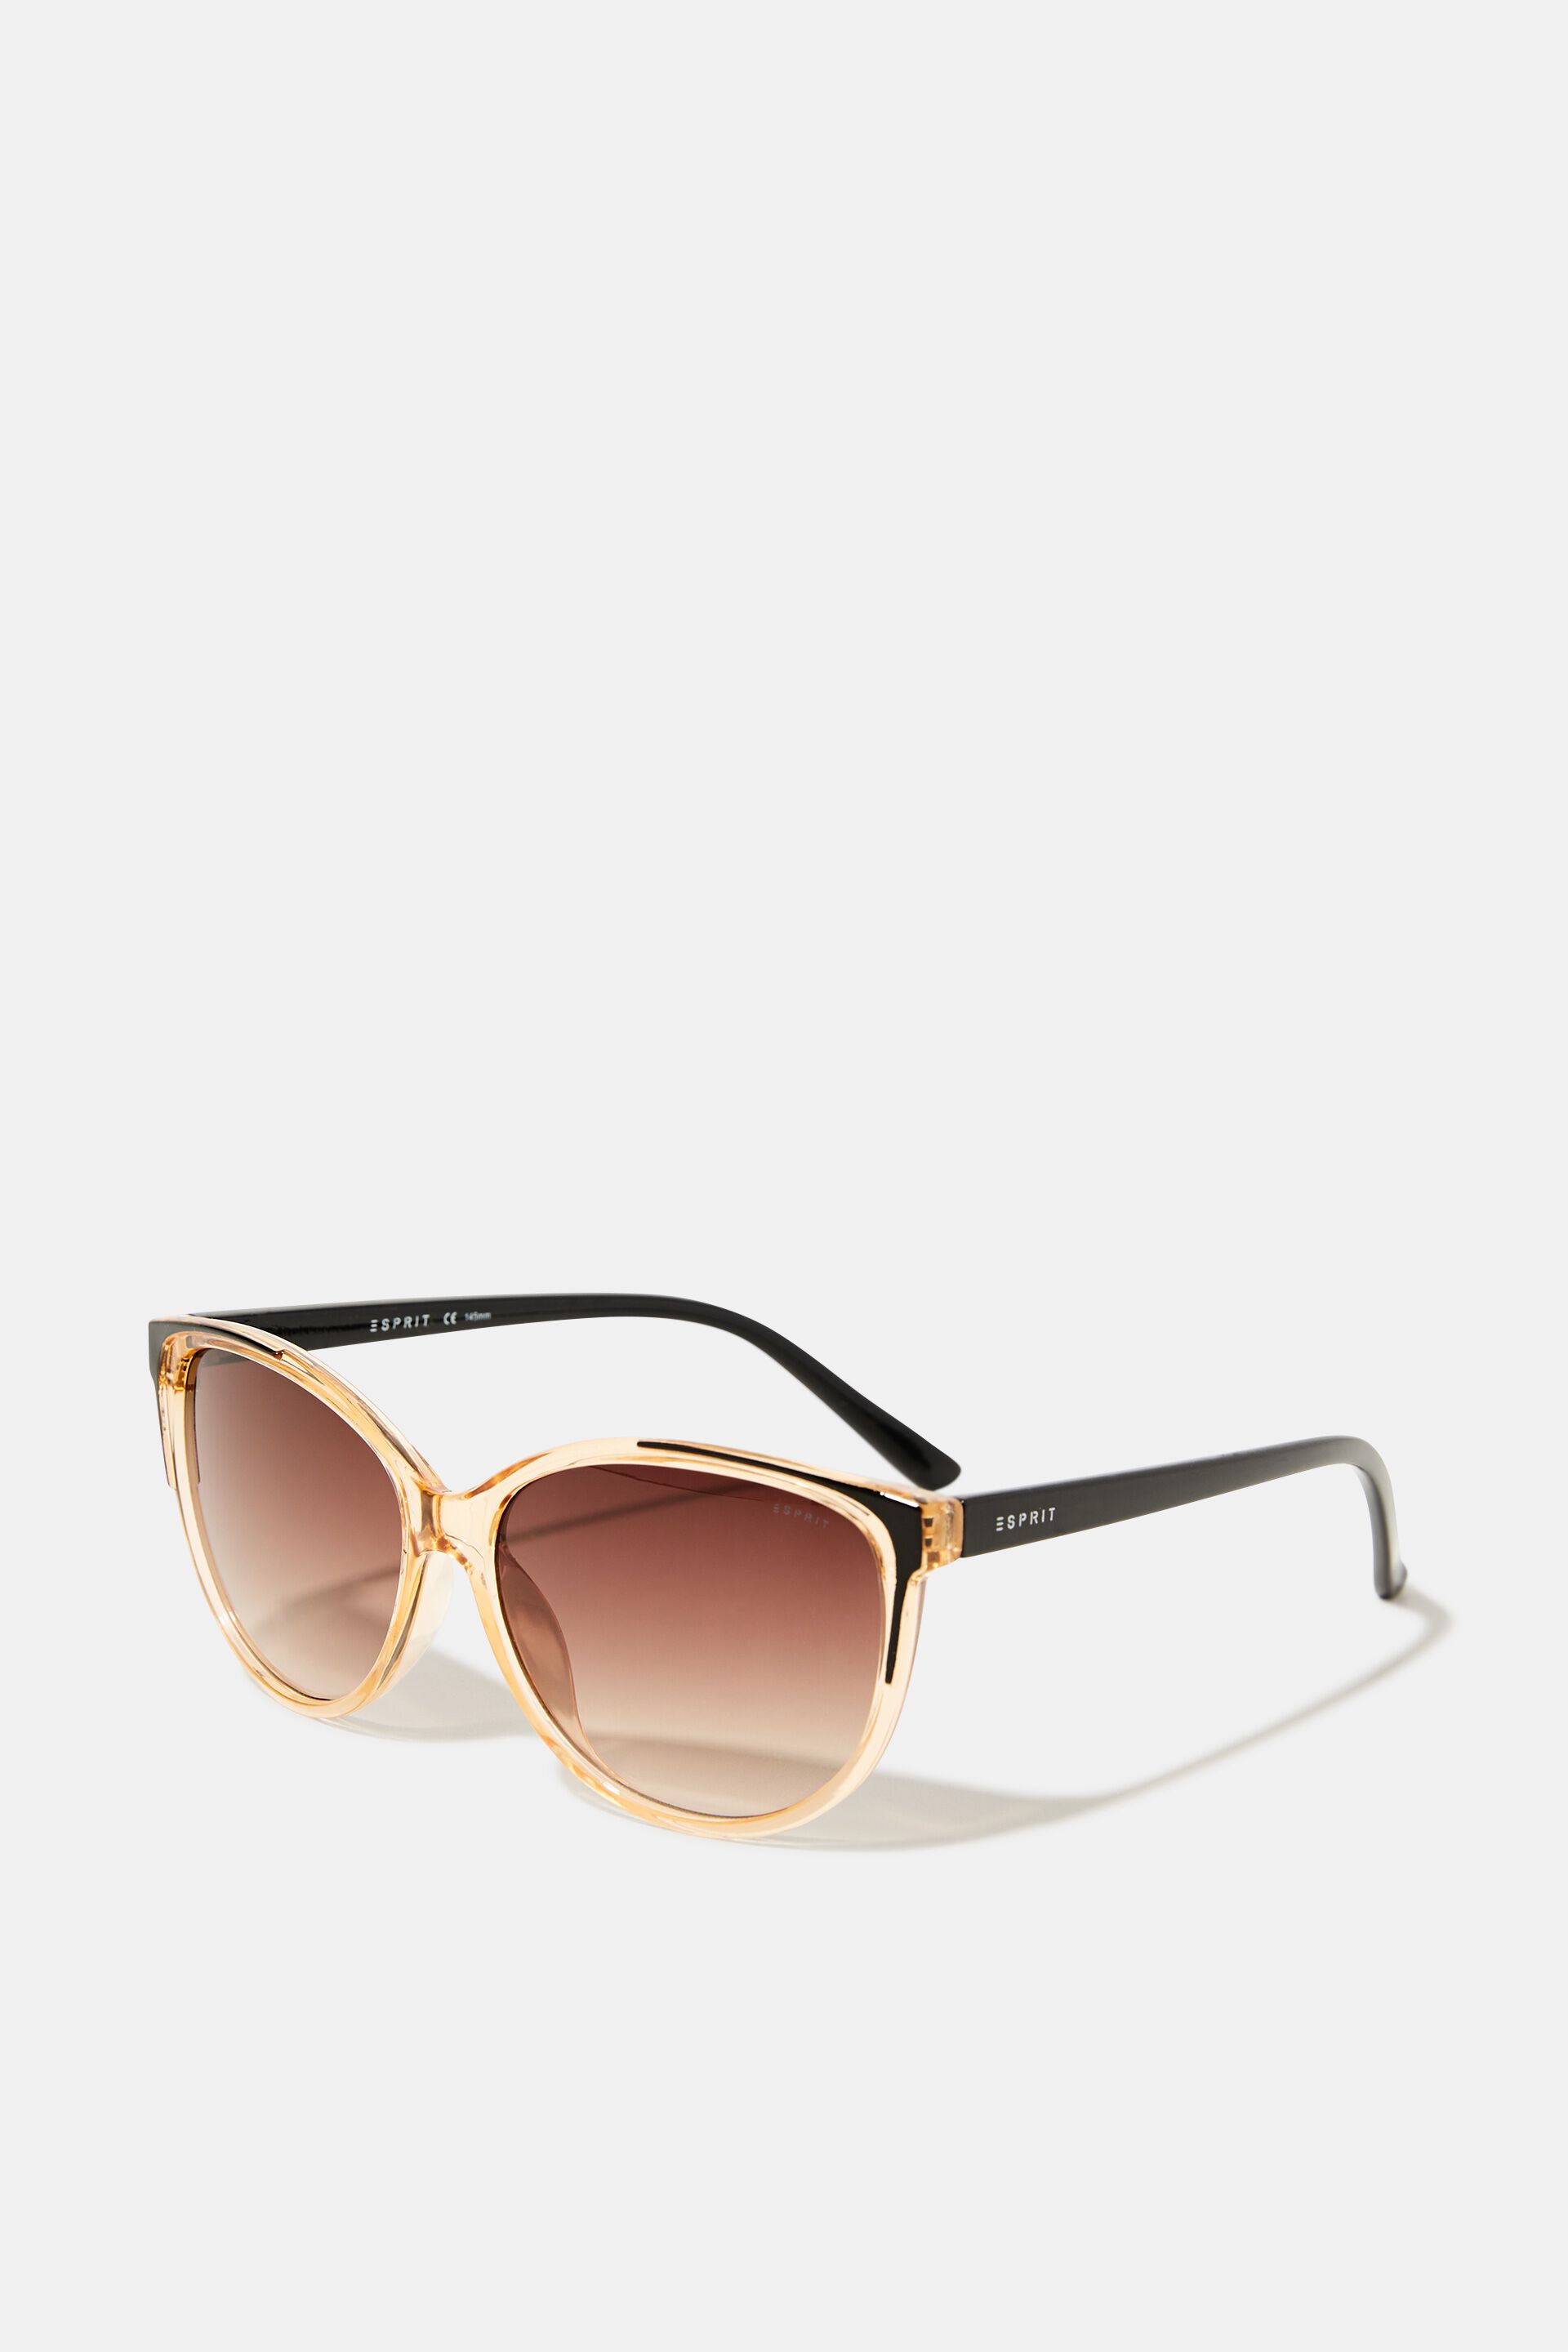 Esprit Sunglasses frame transparent with